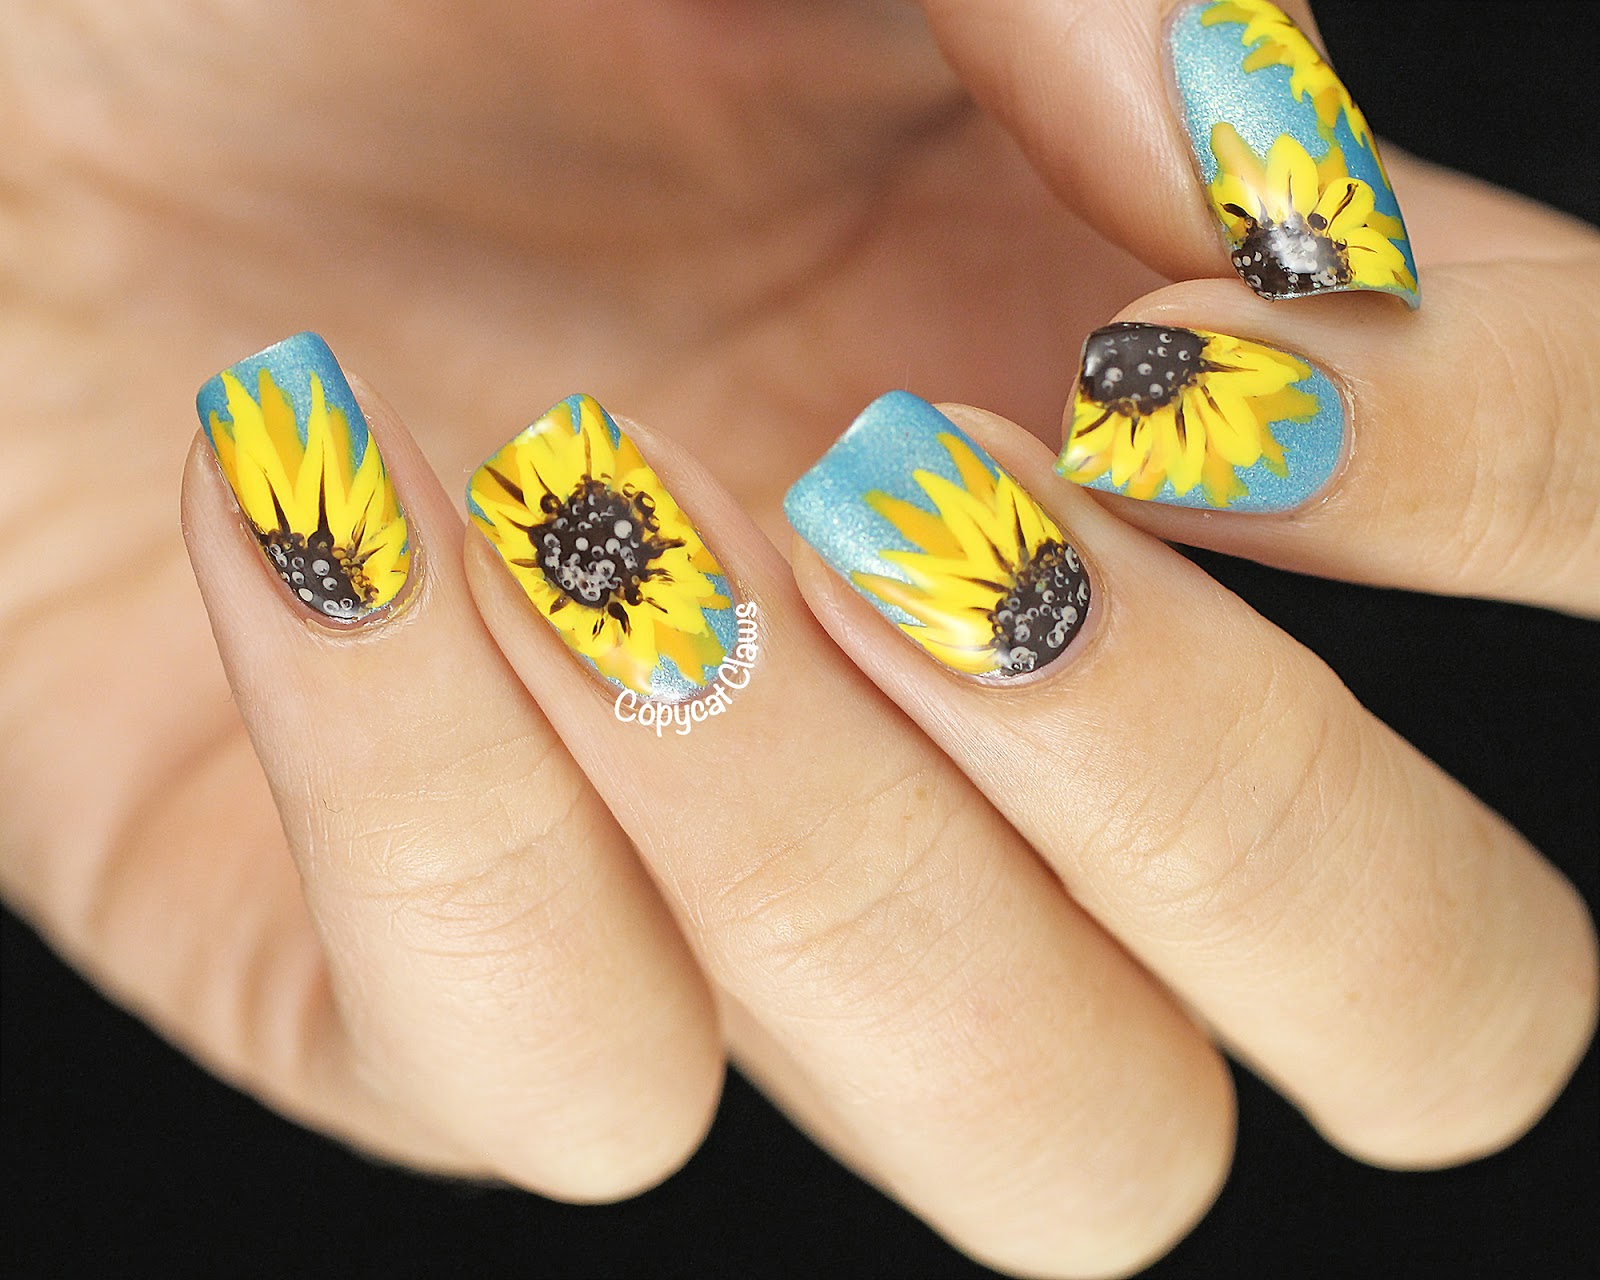 1. Sunflower Nail Art Tutorial - wide 10